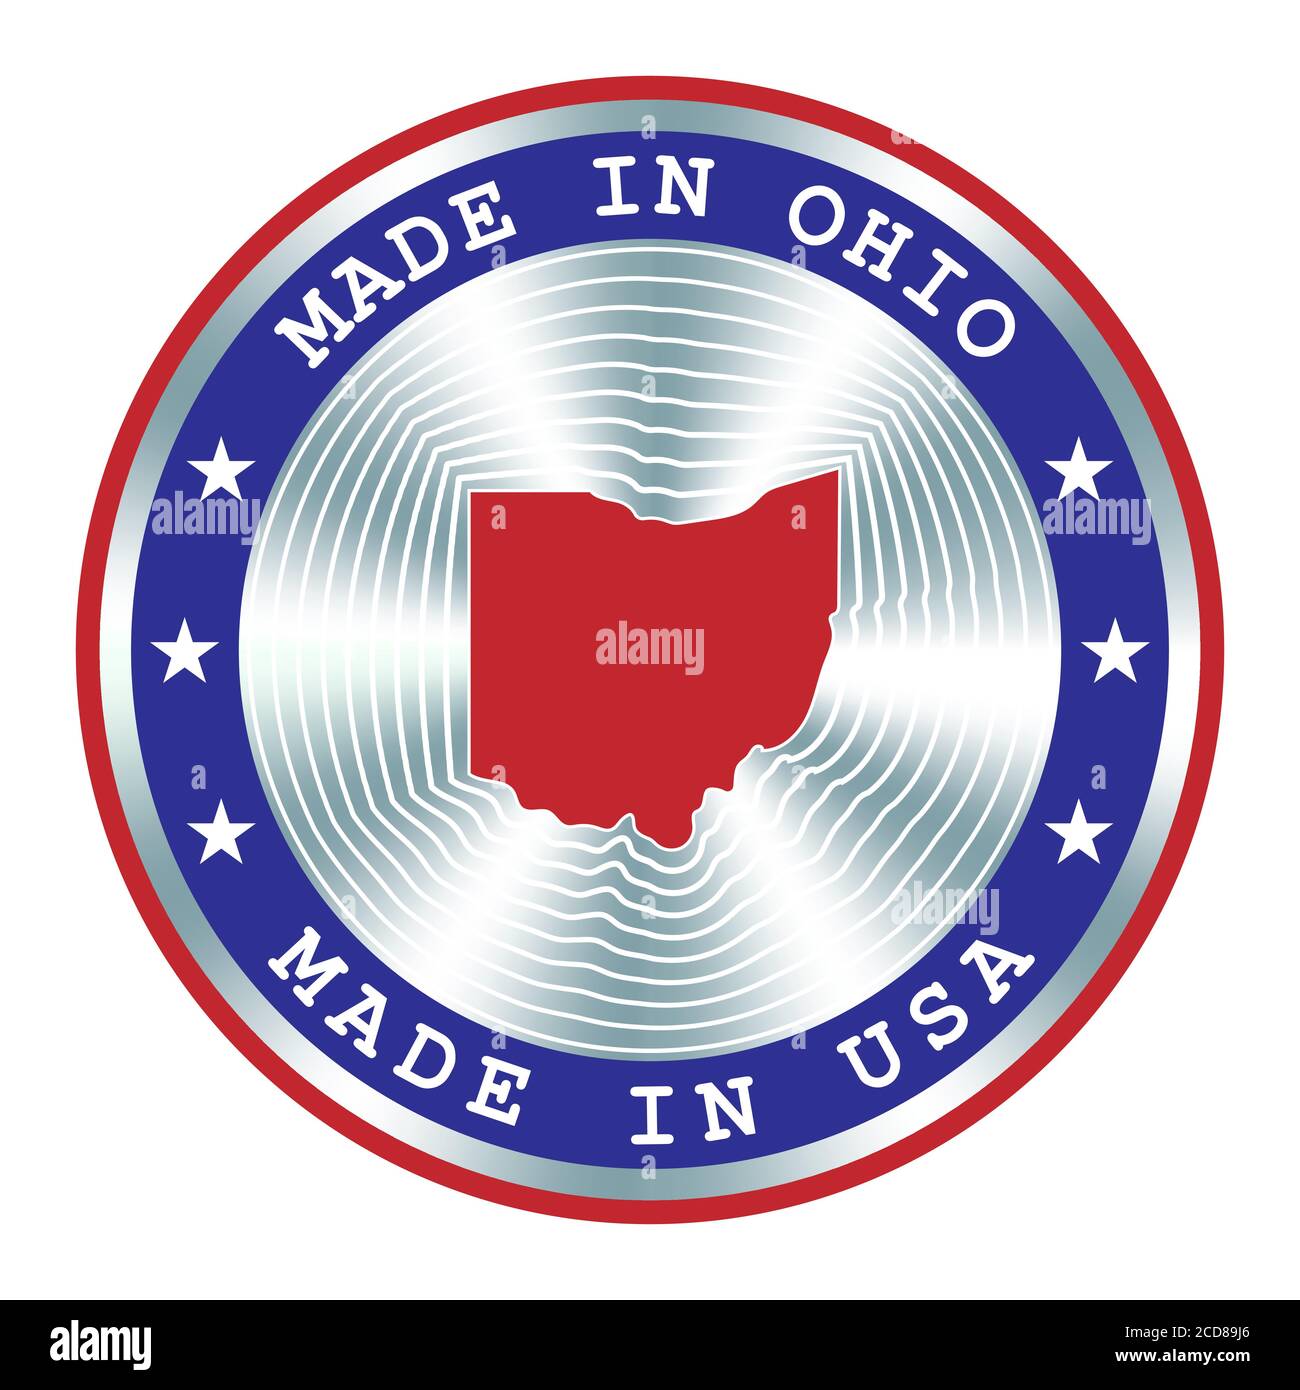 Hergestellt in Ohio lokale Produktion Schild, Aufkleber, Siegel, Stempel. Rundes Hologramm-Schild für Etikettendesign und nationale Vermarktung Stock Vektor